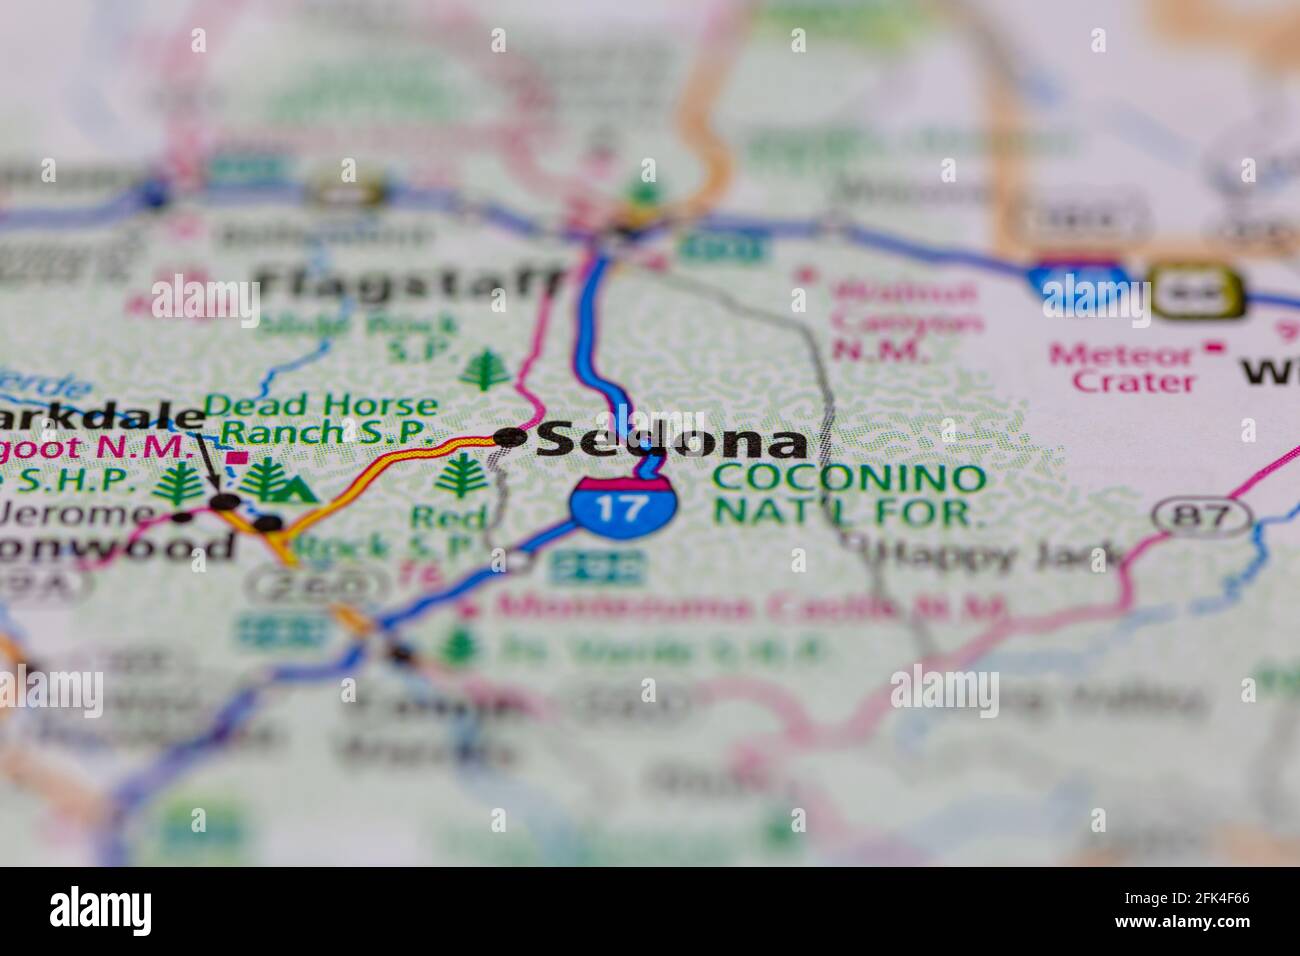 Sedona Arizona Etats-Unis indiqué sur une carte géographique ou une route carte Banque D'Images